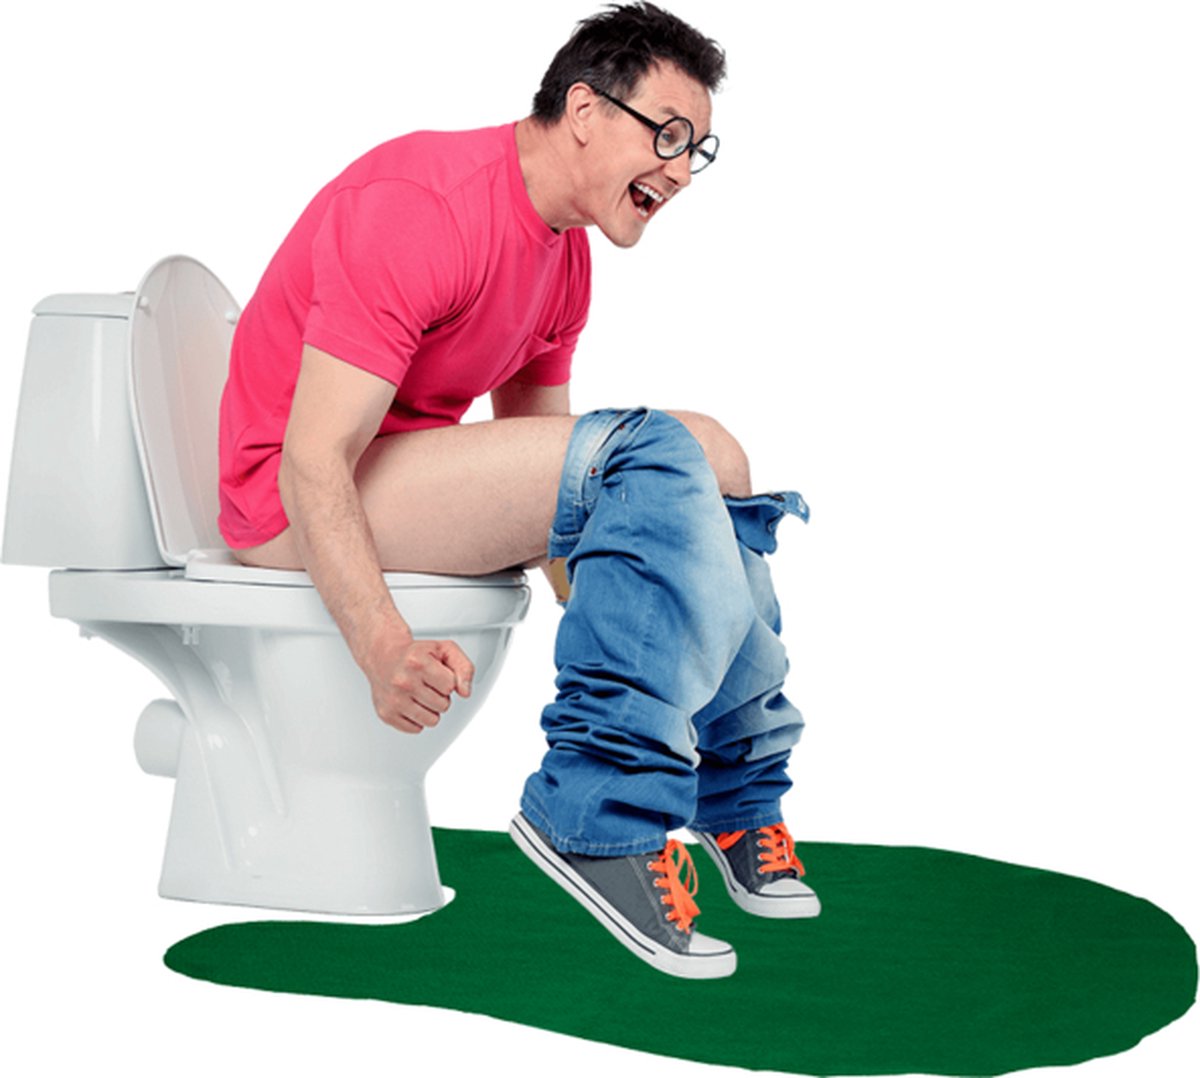 Toilet Golf Toy - Jeu de toilette Mini Golf Jouet - Ensemble de jeu de  toilette